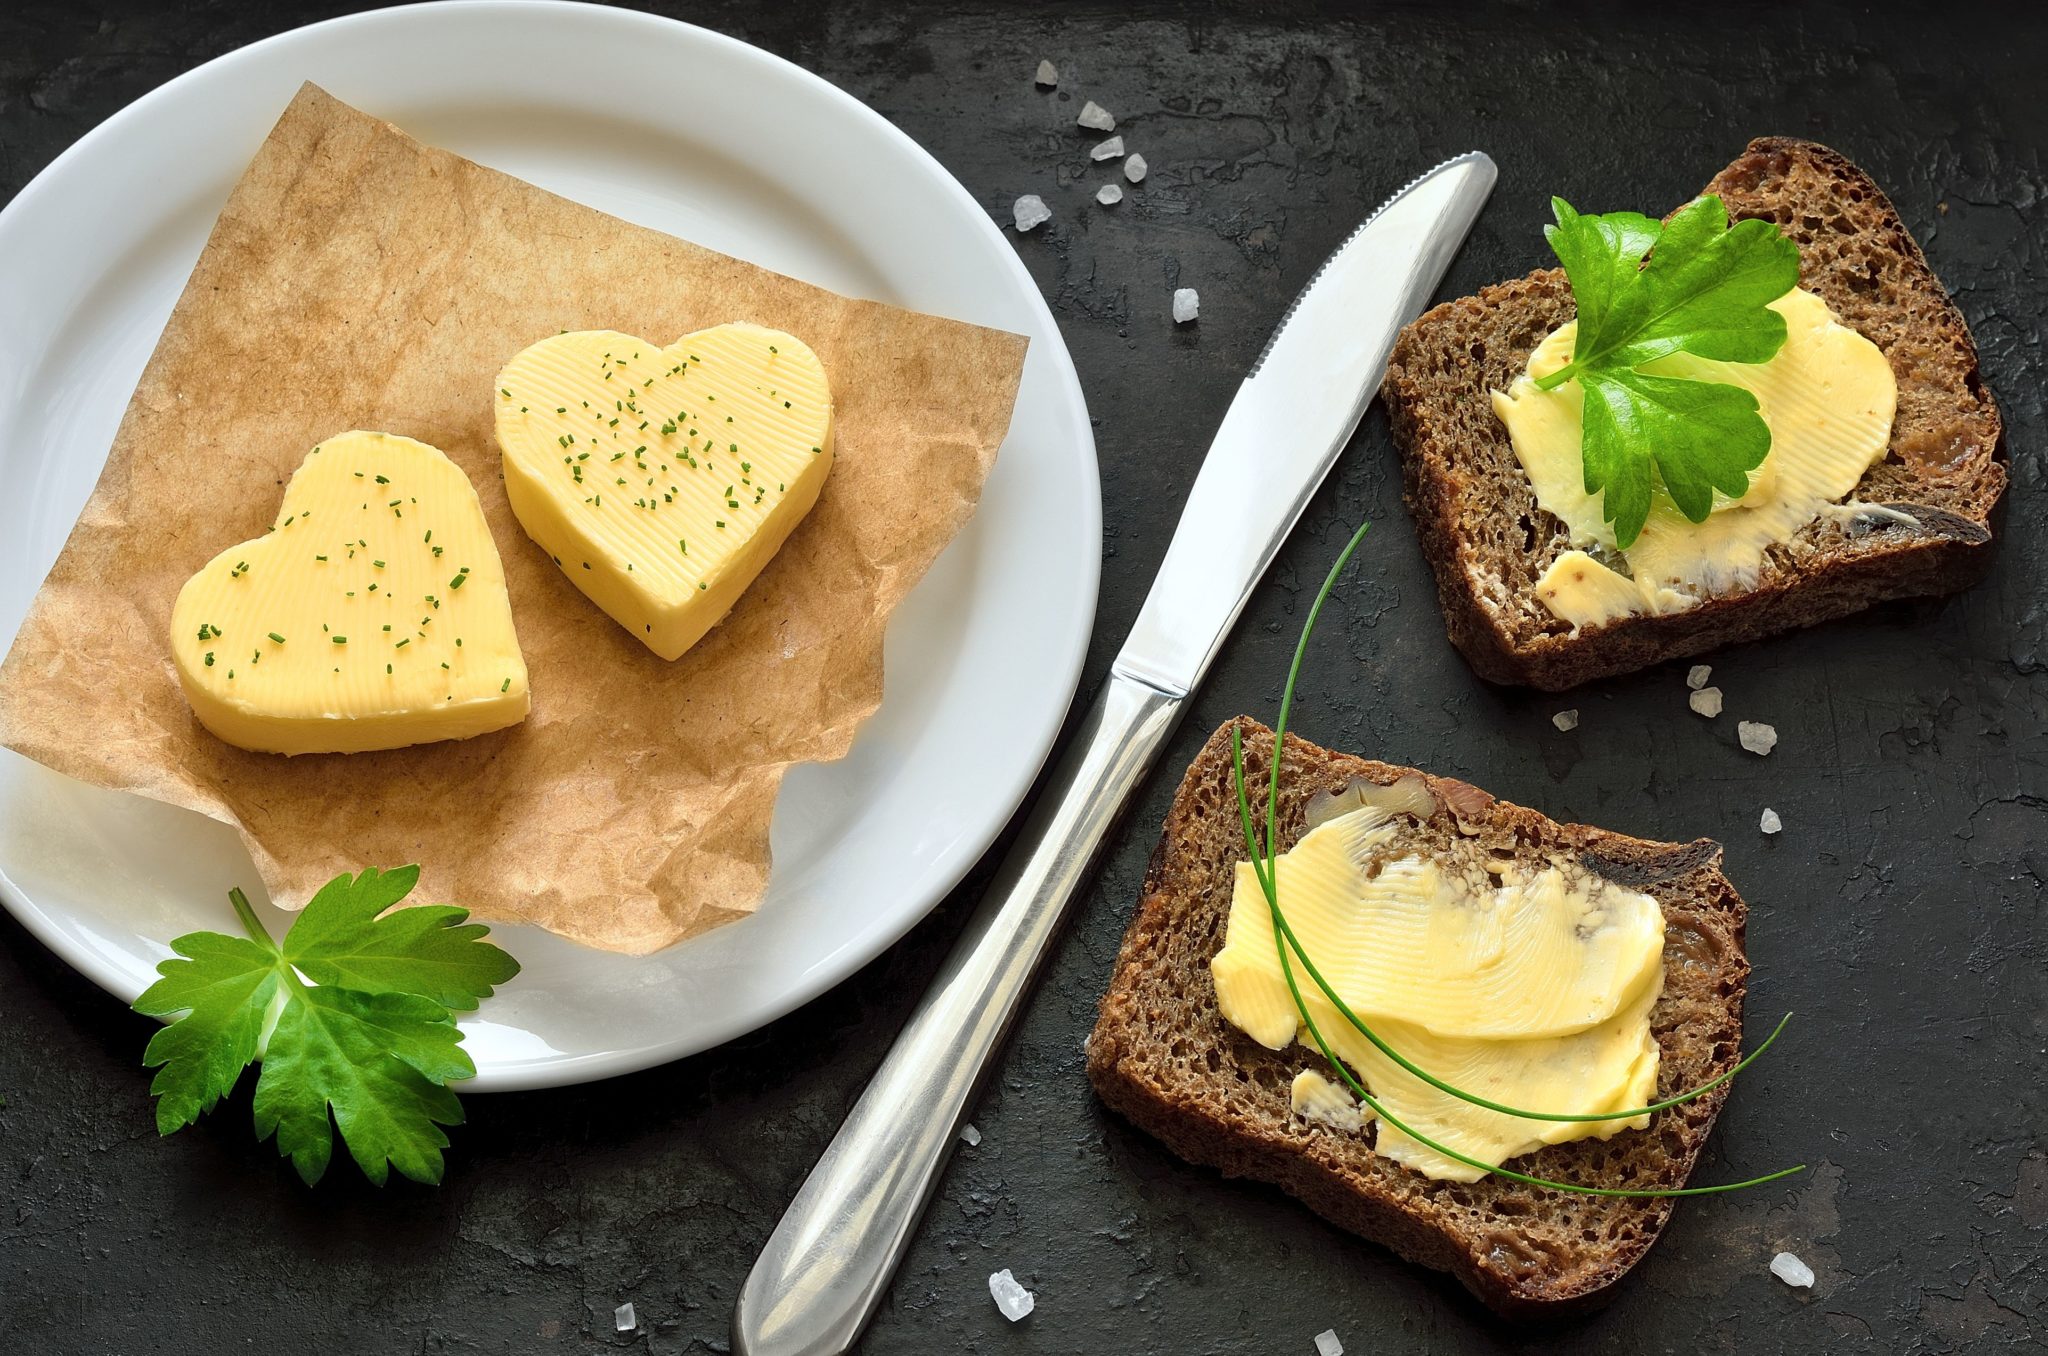 Masło maślane – jakie powinno być prawdziwe masło?